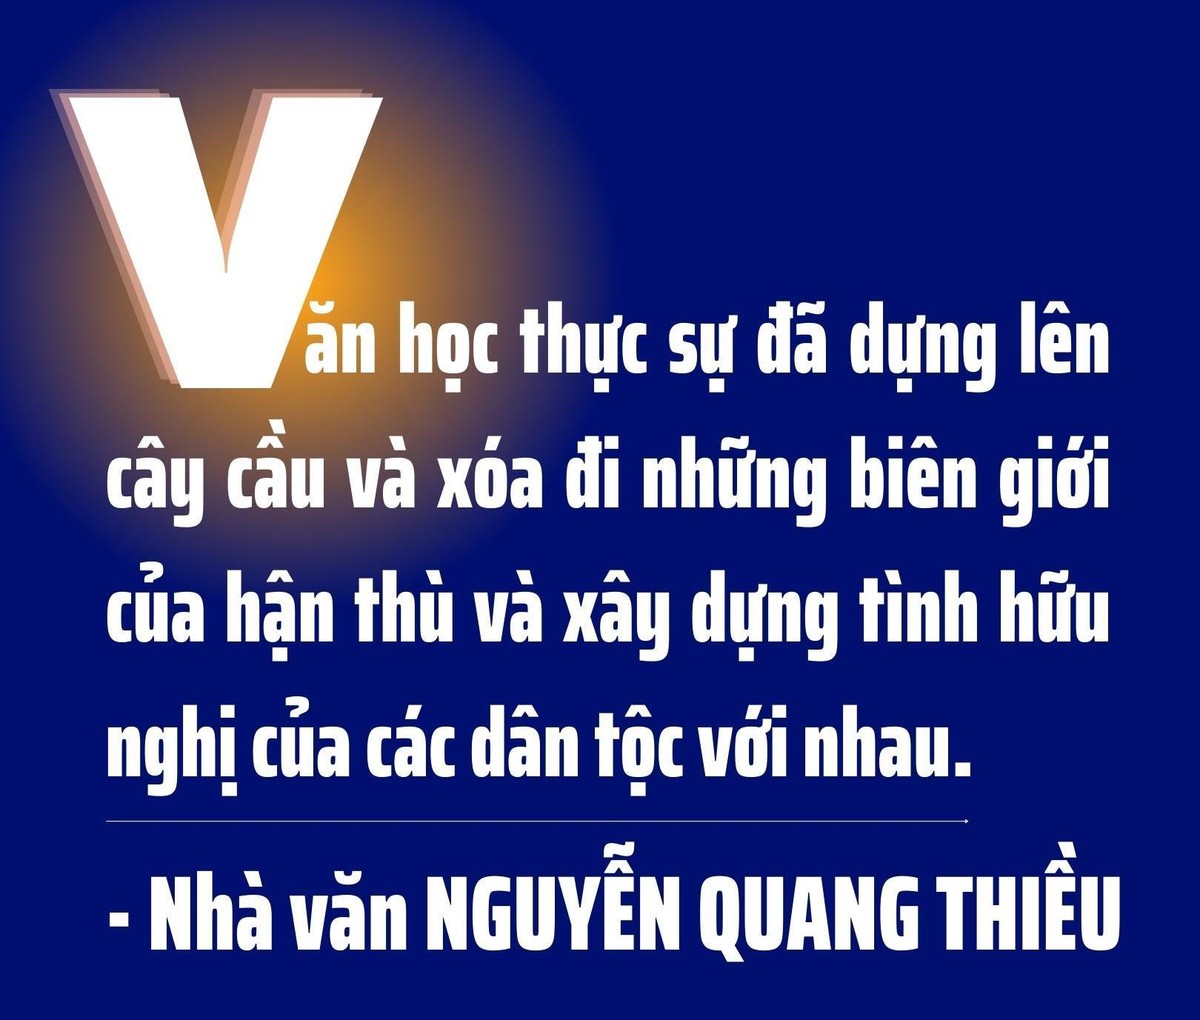 Nhà văn Nguyễn Quang Thiều: Một đứa trẻ Việt phải lớn lên trong tinh thần văn hóa Việt ảnh 11